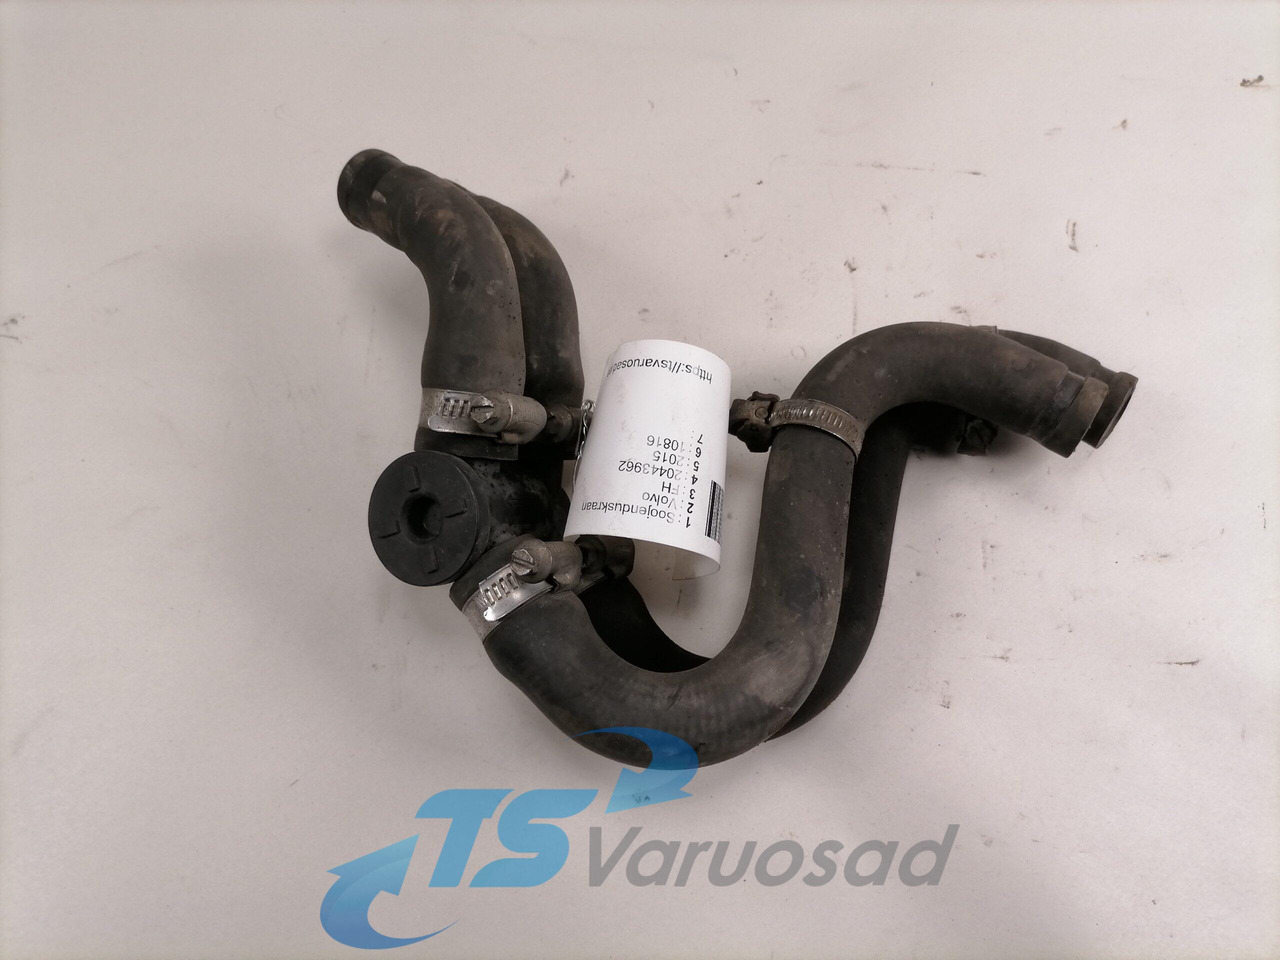 Aquecimento/ Ventilação para Camião Volvo Water valve 20443962: foto 2